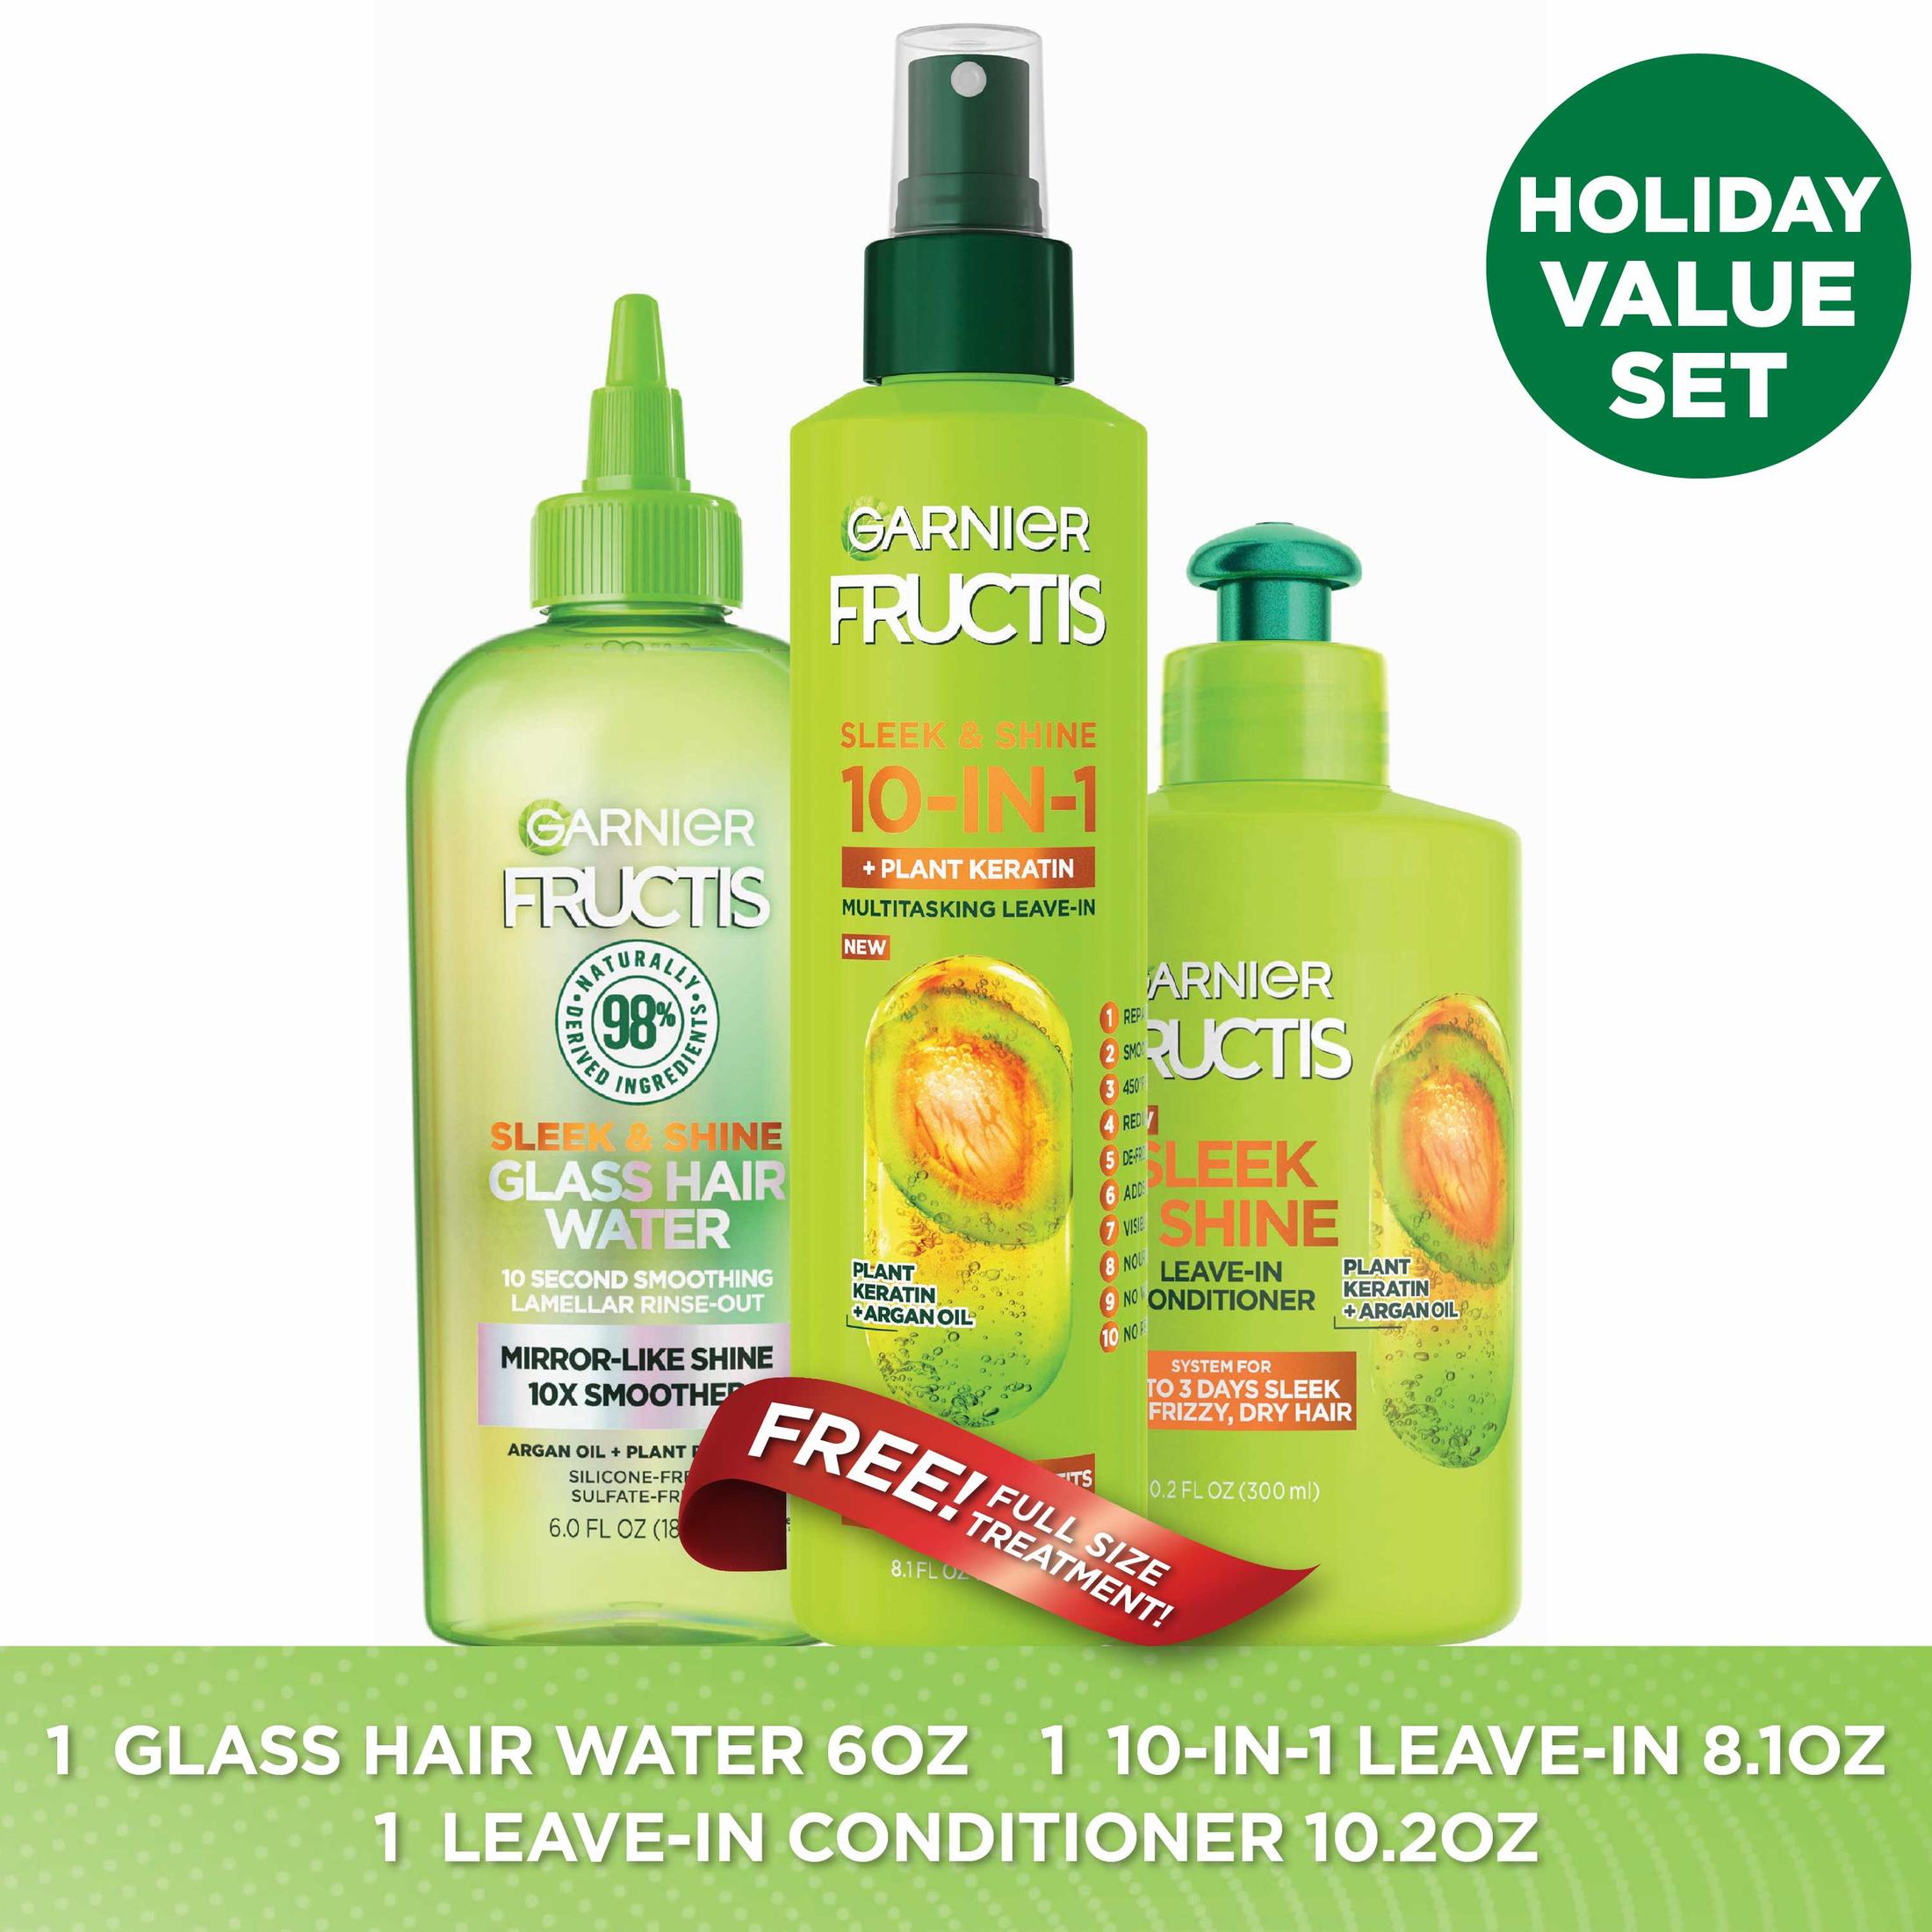 ($21 Value) Garnier Fructis Sleek & Shine Shampoo Conditioner and Treatment Gift Set, Holiday Kit - image 1 of 4